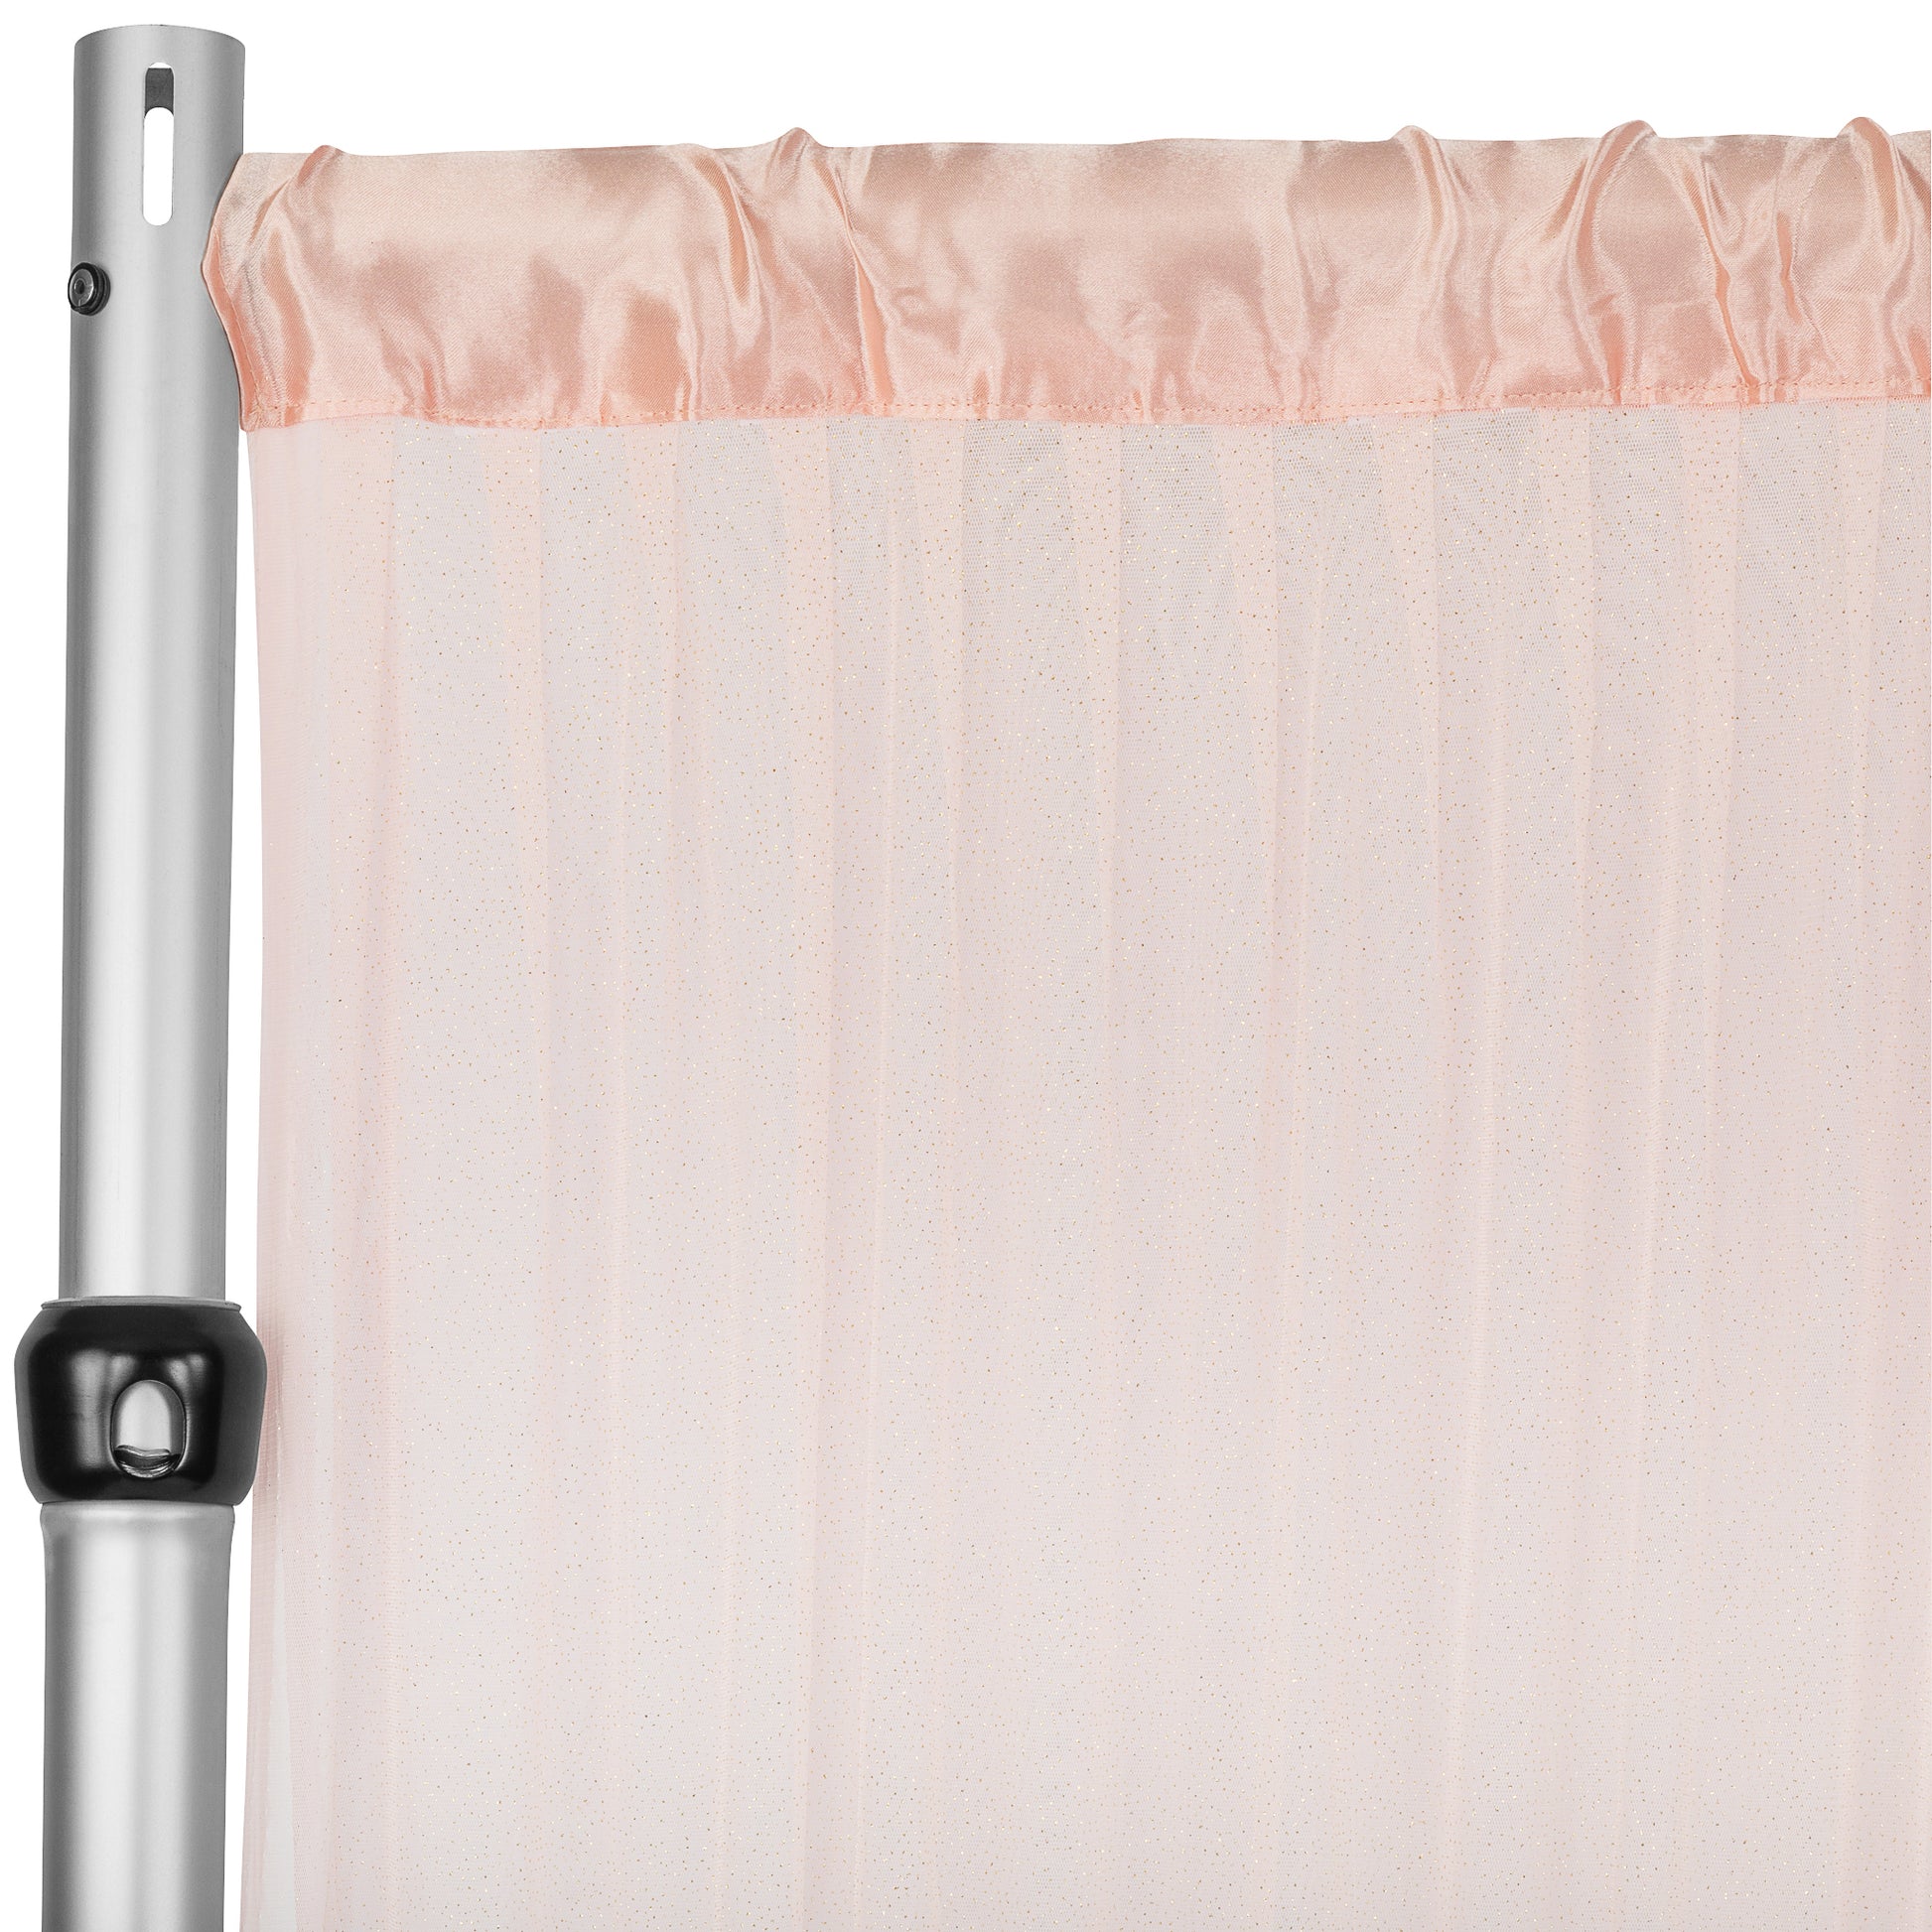 Glitter Tulle Tutu 10ft H x 56" W Drape/Backdrop Curtain Panel - Blush/Rose Gold - CV Linens